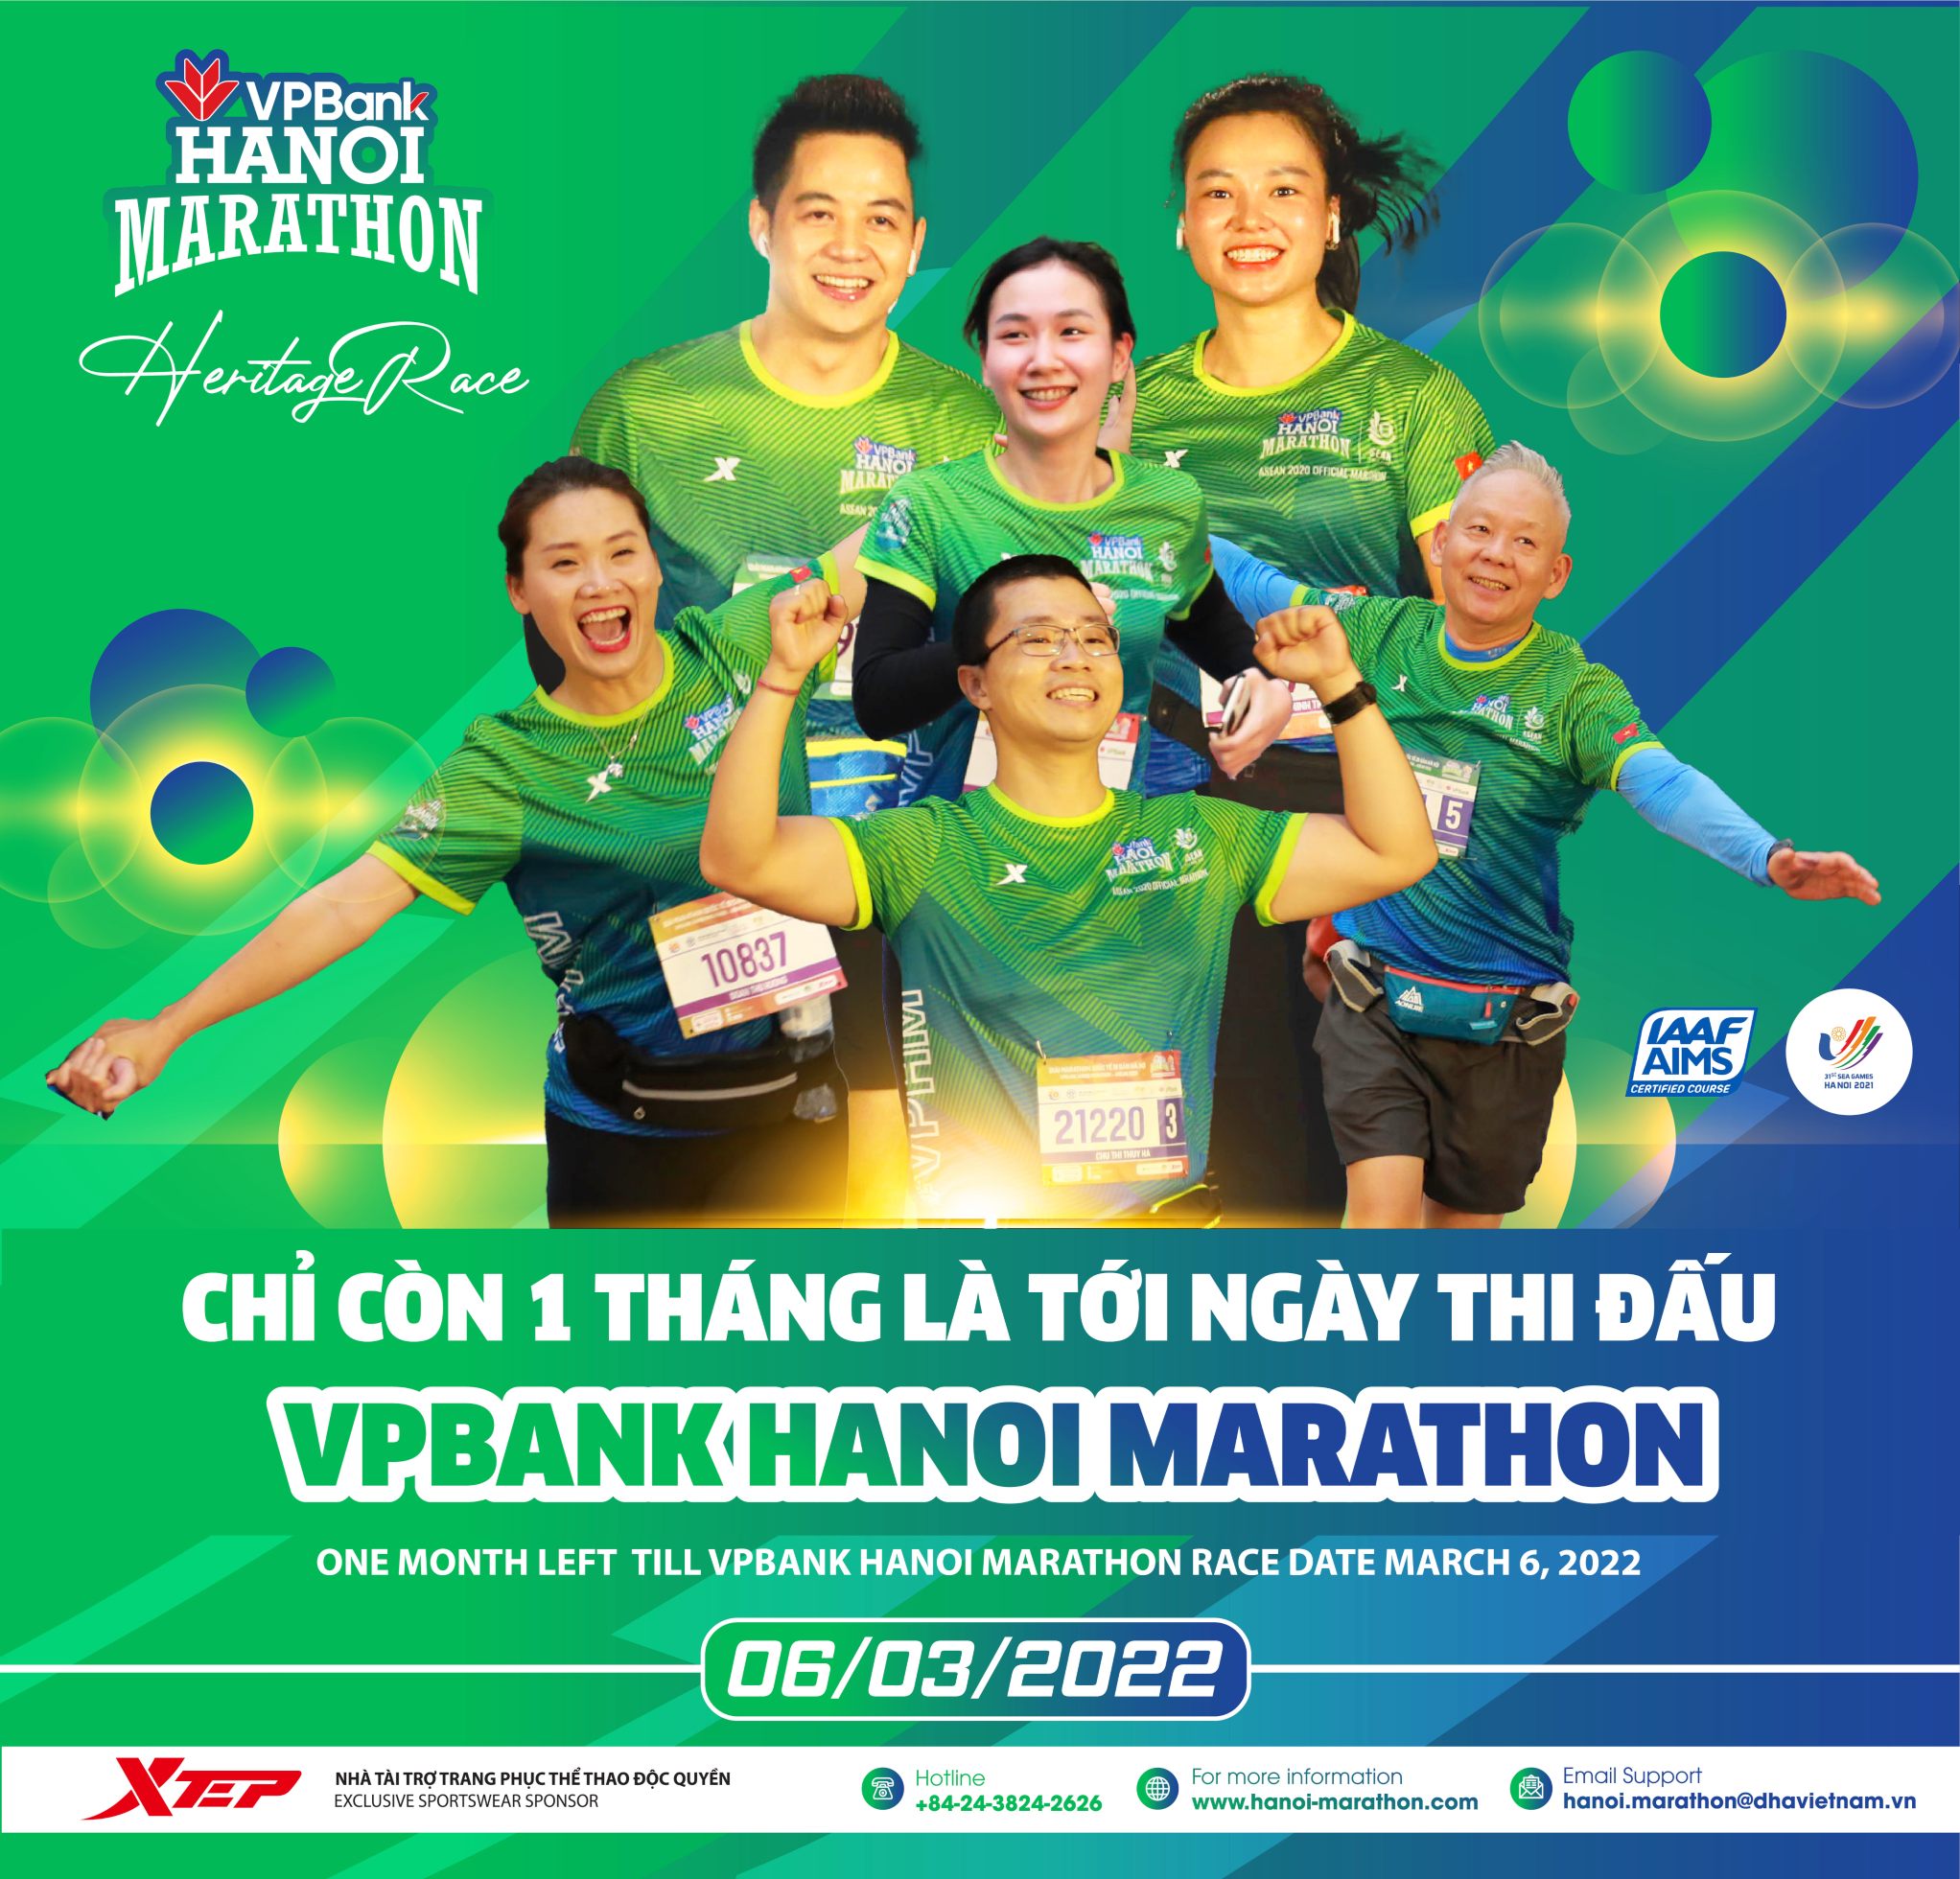 Còn 1 Tháng Đến Ngày Thi Đấu VPBank Hanoi Marathon 06/03/2022